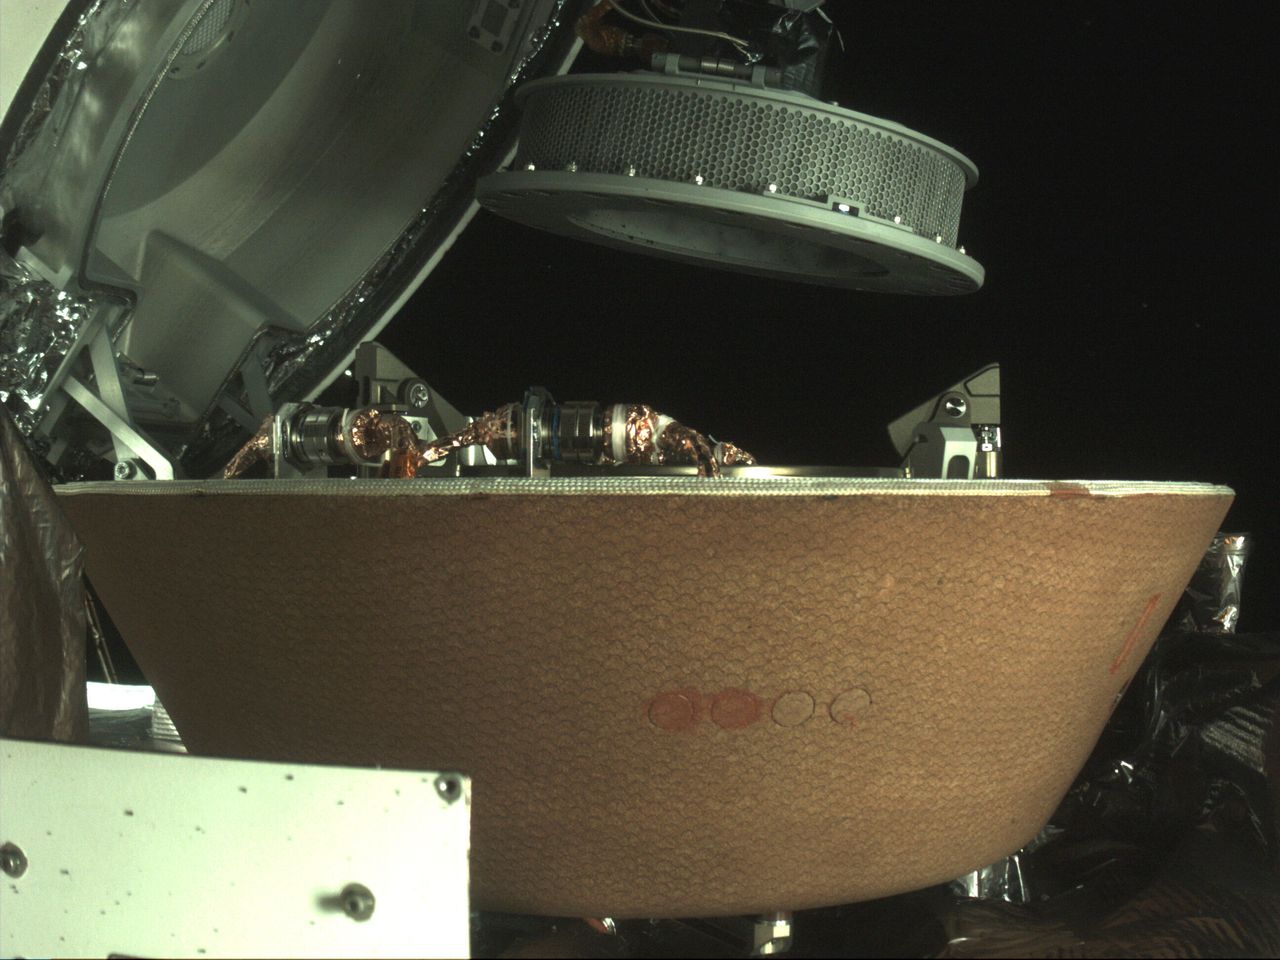 Την Κυριακή, το διαστημικό σκάφος OSIRIS-REx θα πετάξει δίπλα στη Γη και θα ρίξει αυτό ένα «φλιτζάνι με υλικά» που άρπαξε από τον αστεροειδή Bennu, κλείνοντας μια επταετή αποστολή. Στη φωτογραφία αυτή διακρίνονται λεπτομέρειες από την κάψουλα ανάκτησης υλικού. (NASA via AP, File)